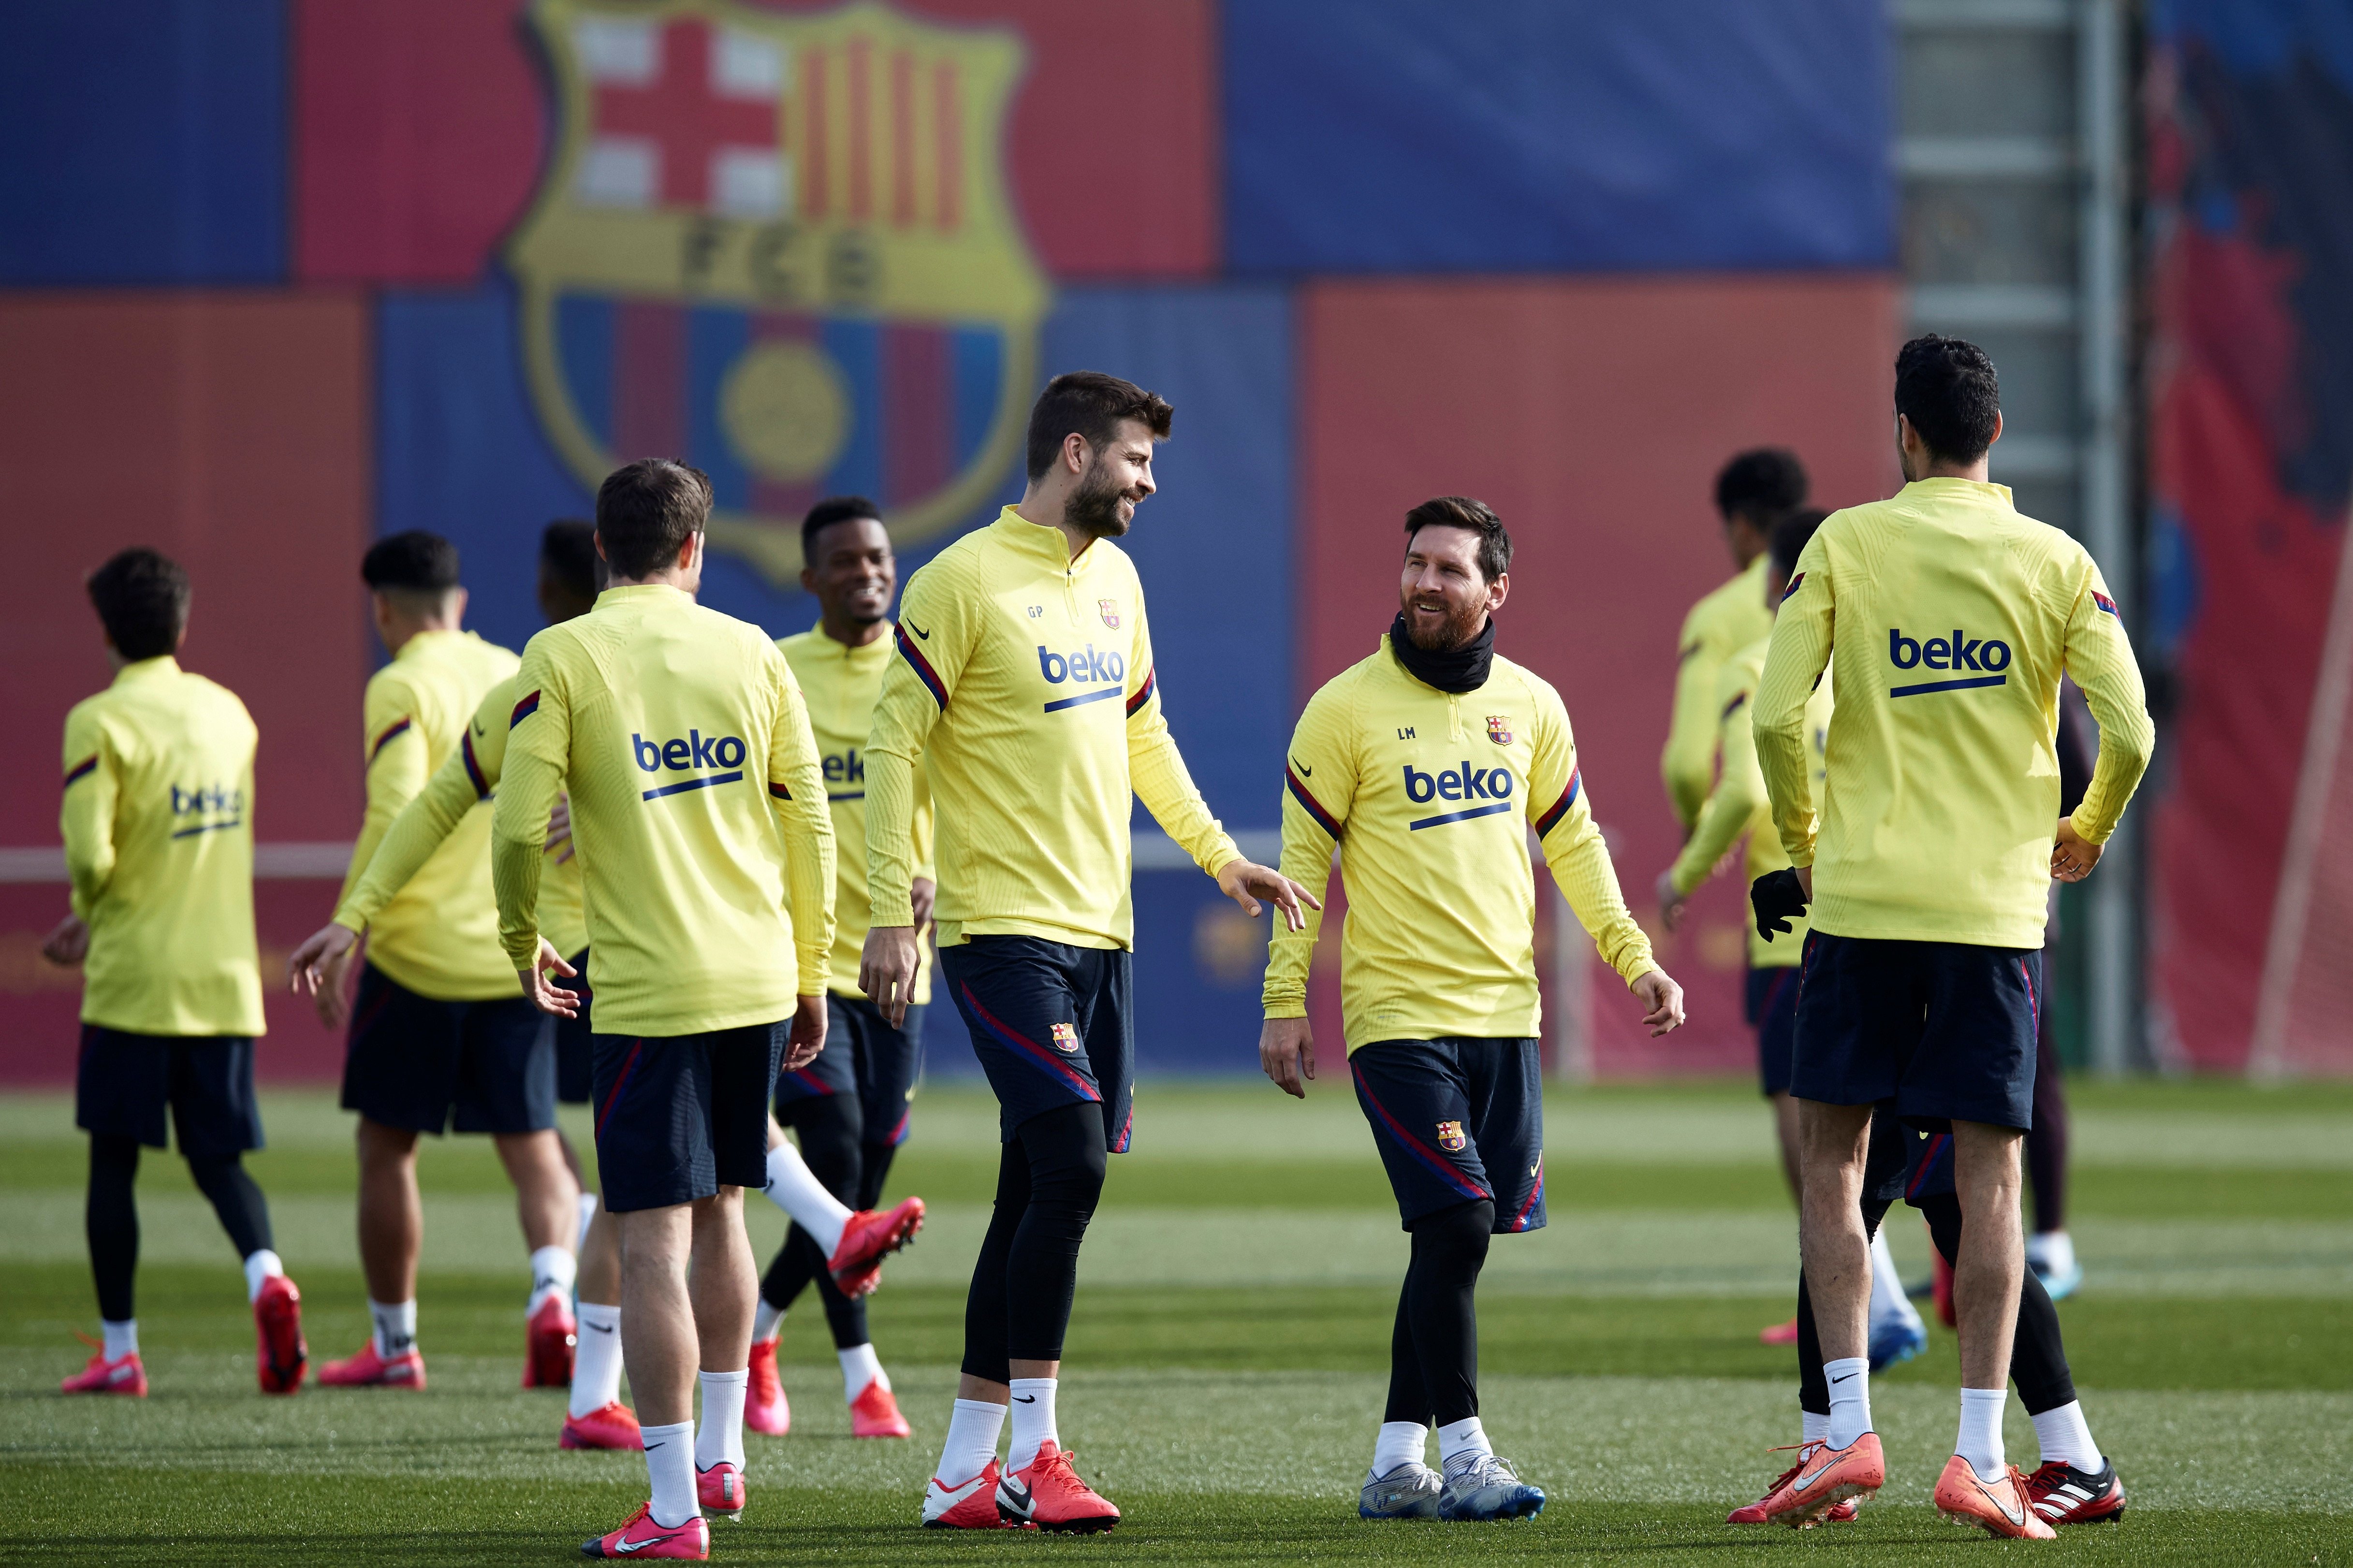 Surt a la llum el motí, amb Piqué i Messi al capdavant, que el Barça porta més de 2 anys silenciant